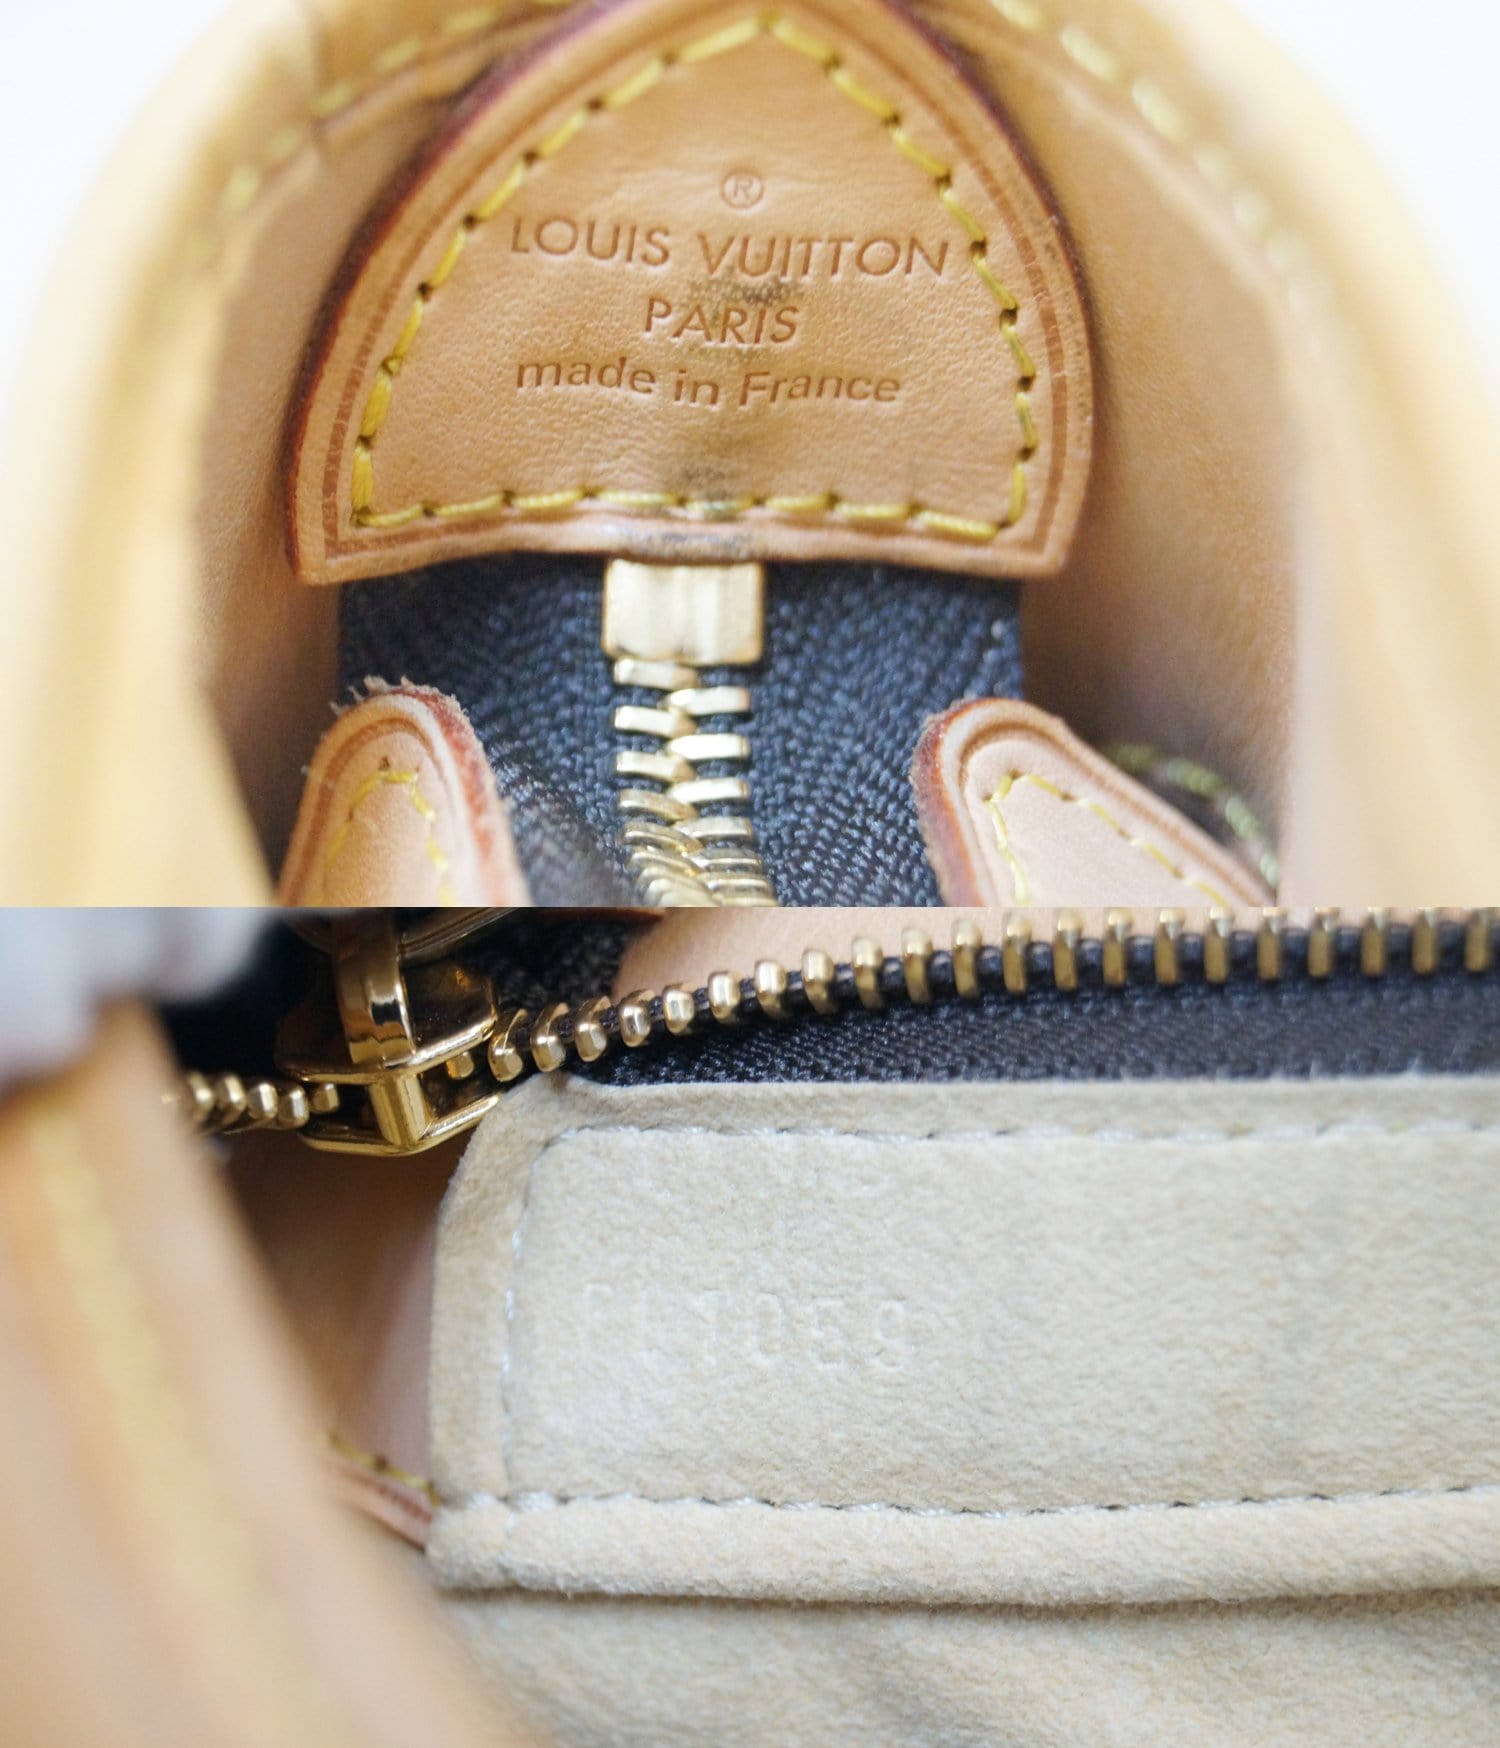 Louis Vuitton Boetie Shoulder Bag MM Brown Canvas & Duster. Box if  local p/u.